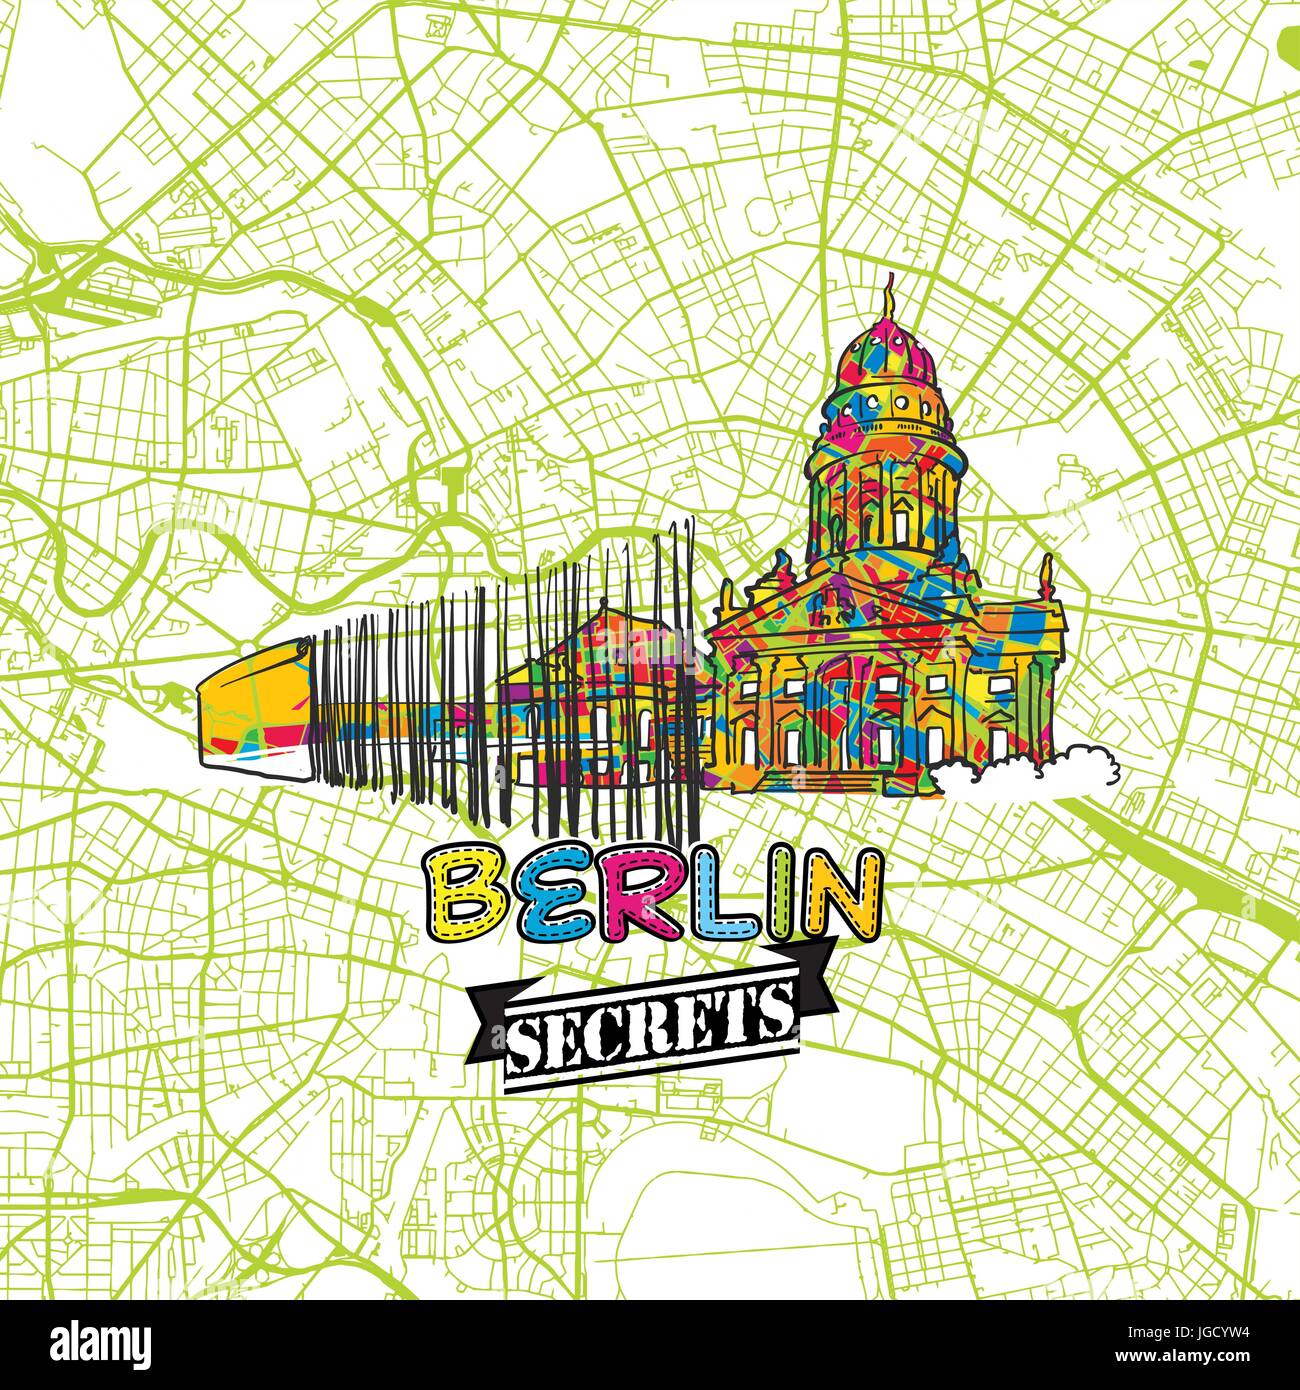 Berlin reisen Geheimnisse Art Map für mapping Experten und Reiseführer. Handgefertigte Stadt logo, Typo Abzeichen und Hand gezeichnet Vektor Bild auf der Oberseite werden gruppiert und Stock Vektor